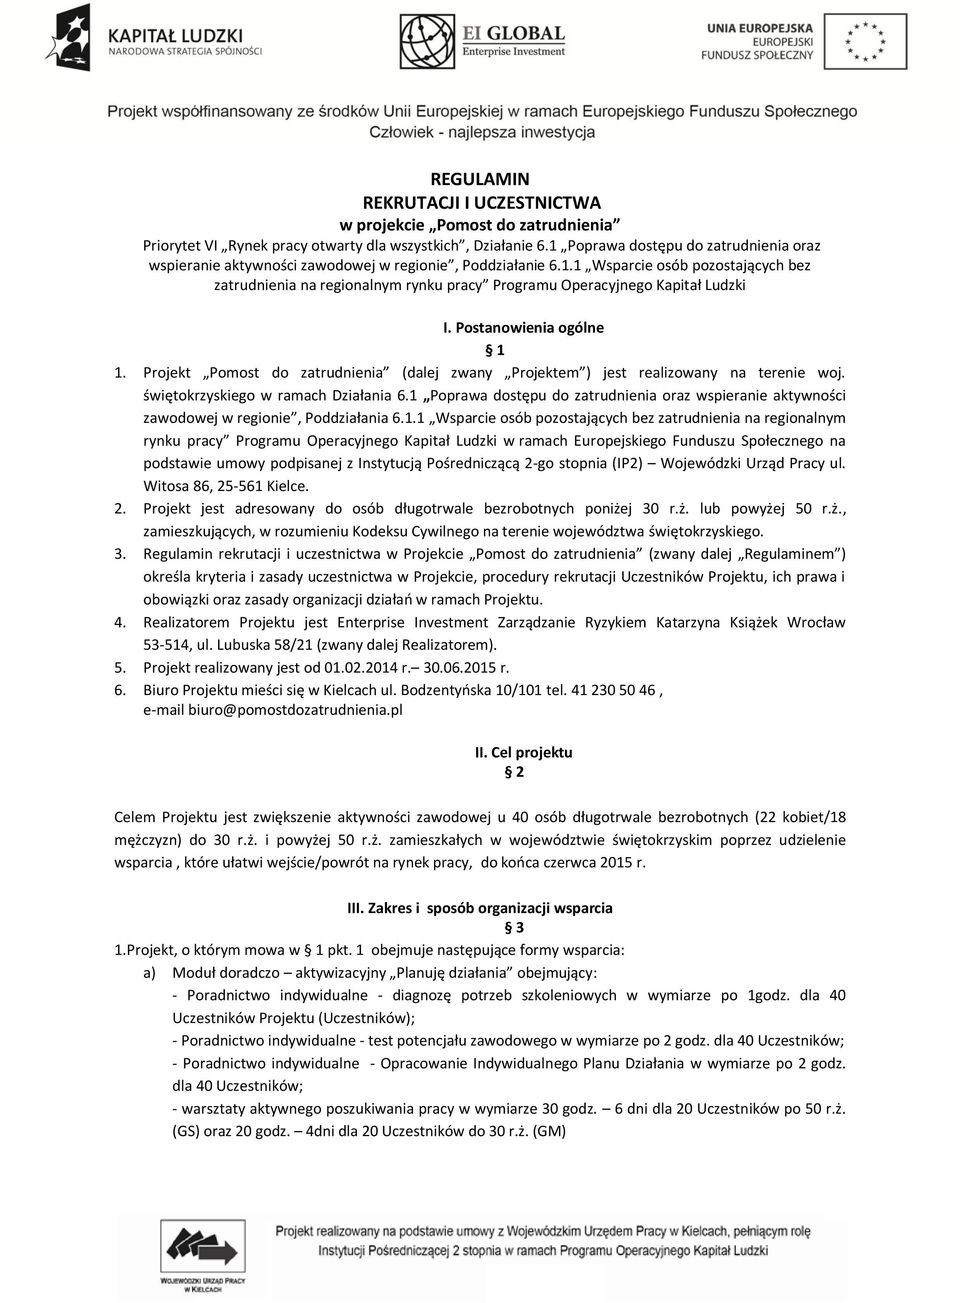 Postanowienia ogólne 1 1. Projekt Pomost do zatrudnienia (dalej zwany Projektem ) jest realizowany na terenie woj. świętokrzyskiego w ramach Działania 6.